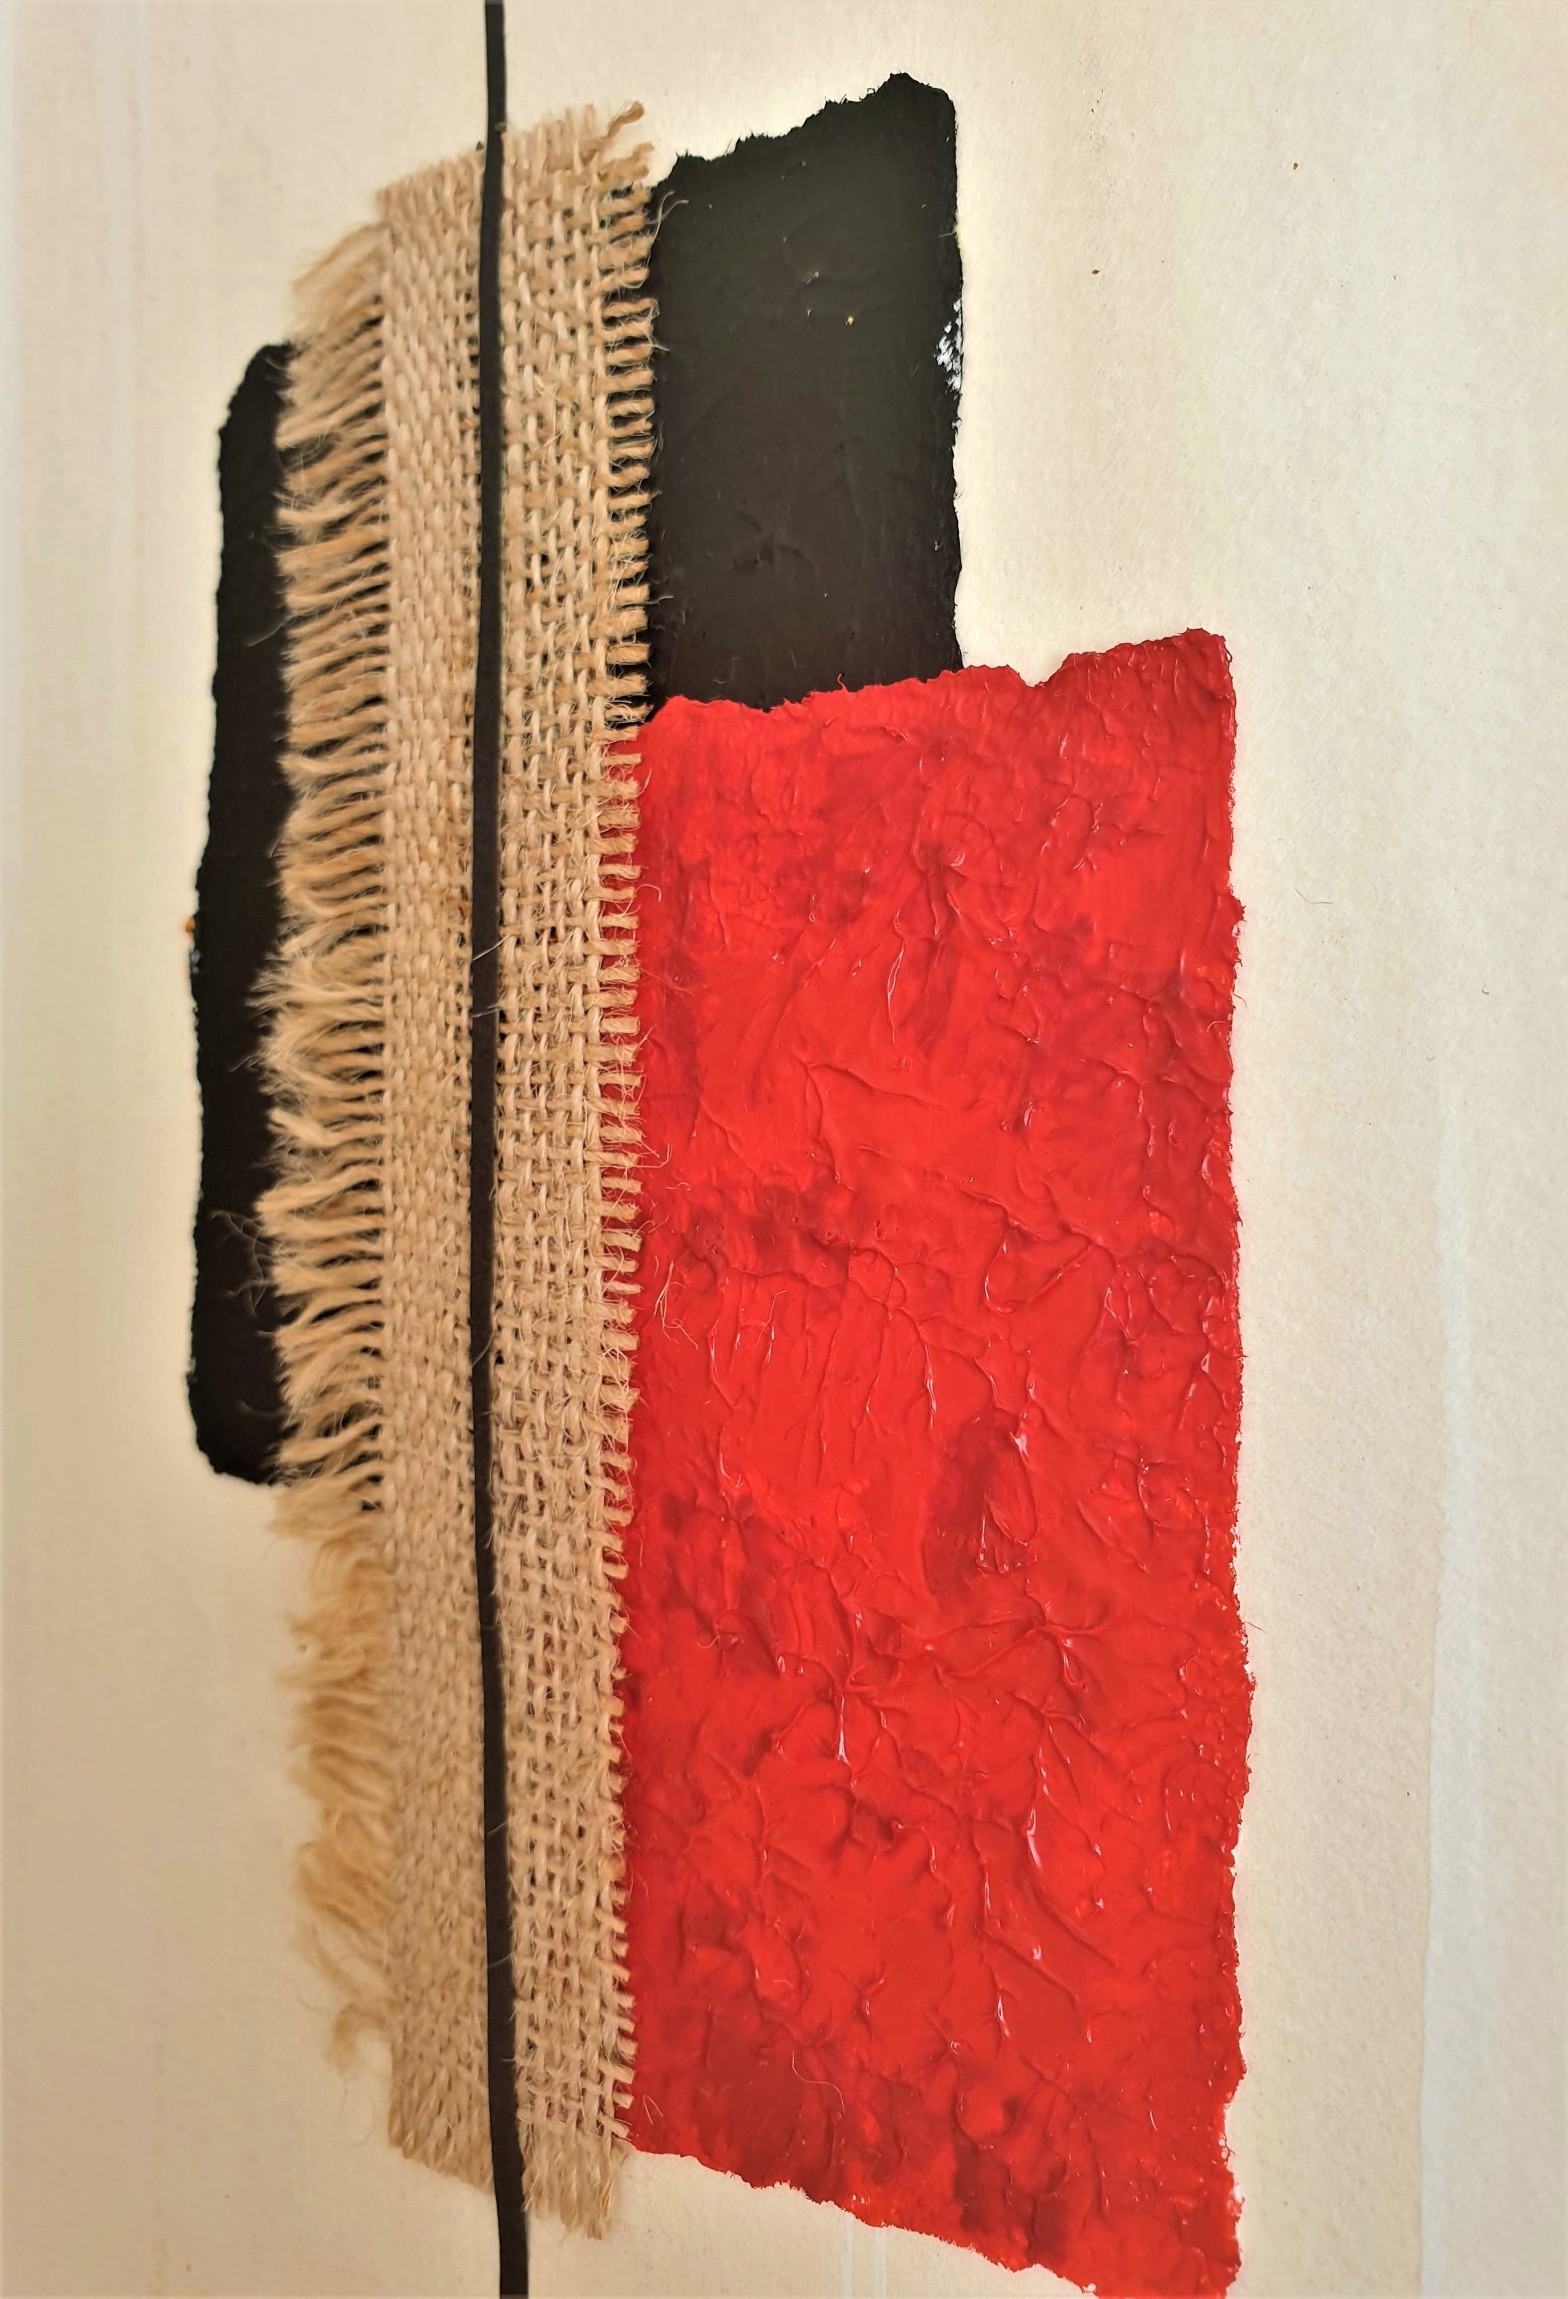 cuadro abstracto "Tribal", por Tatuska